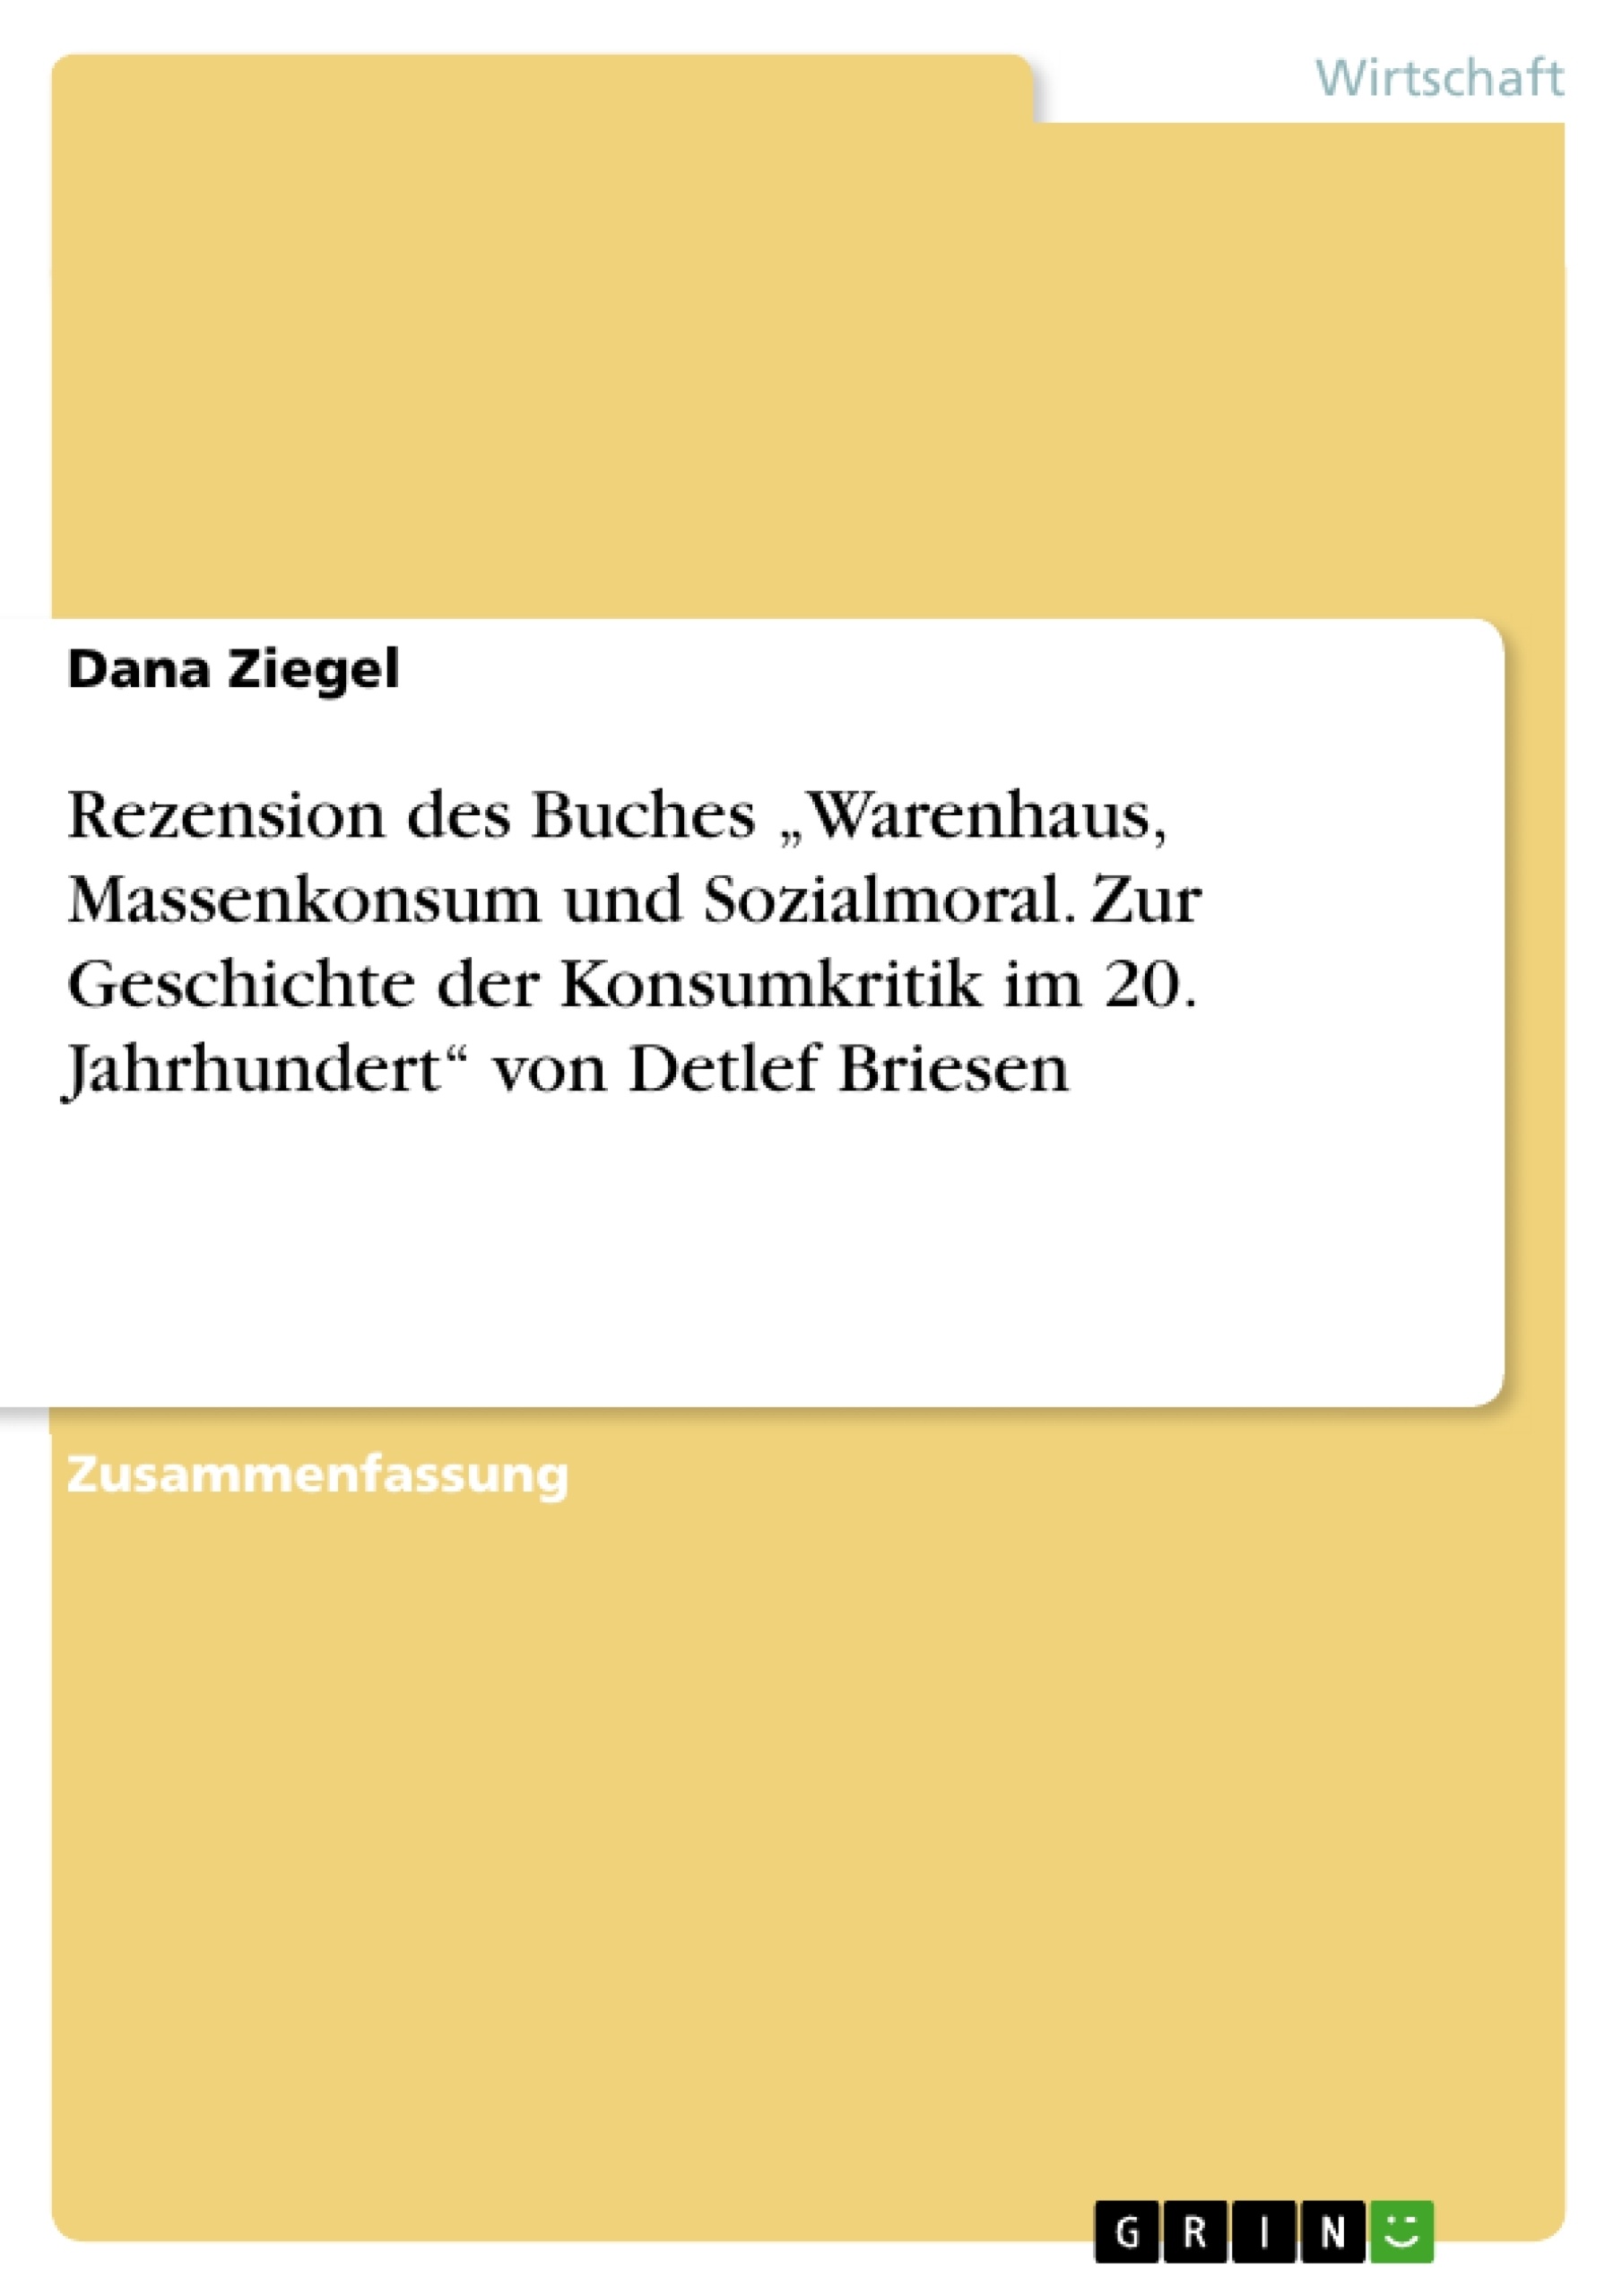 Titre: Rezension des Buches „Warenhaus, Massenkonsum und Sozialmoral. Zur Geschichte der Konsumkritik im 20. Jahrhundert“ von Detlef Briesen